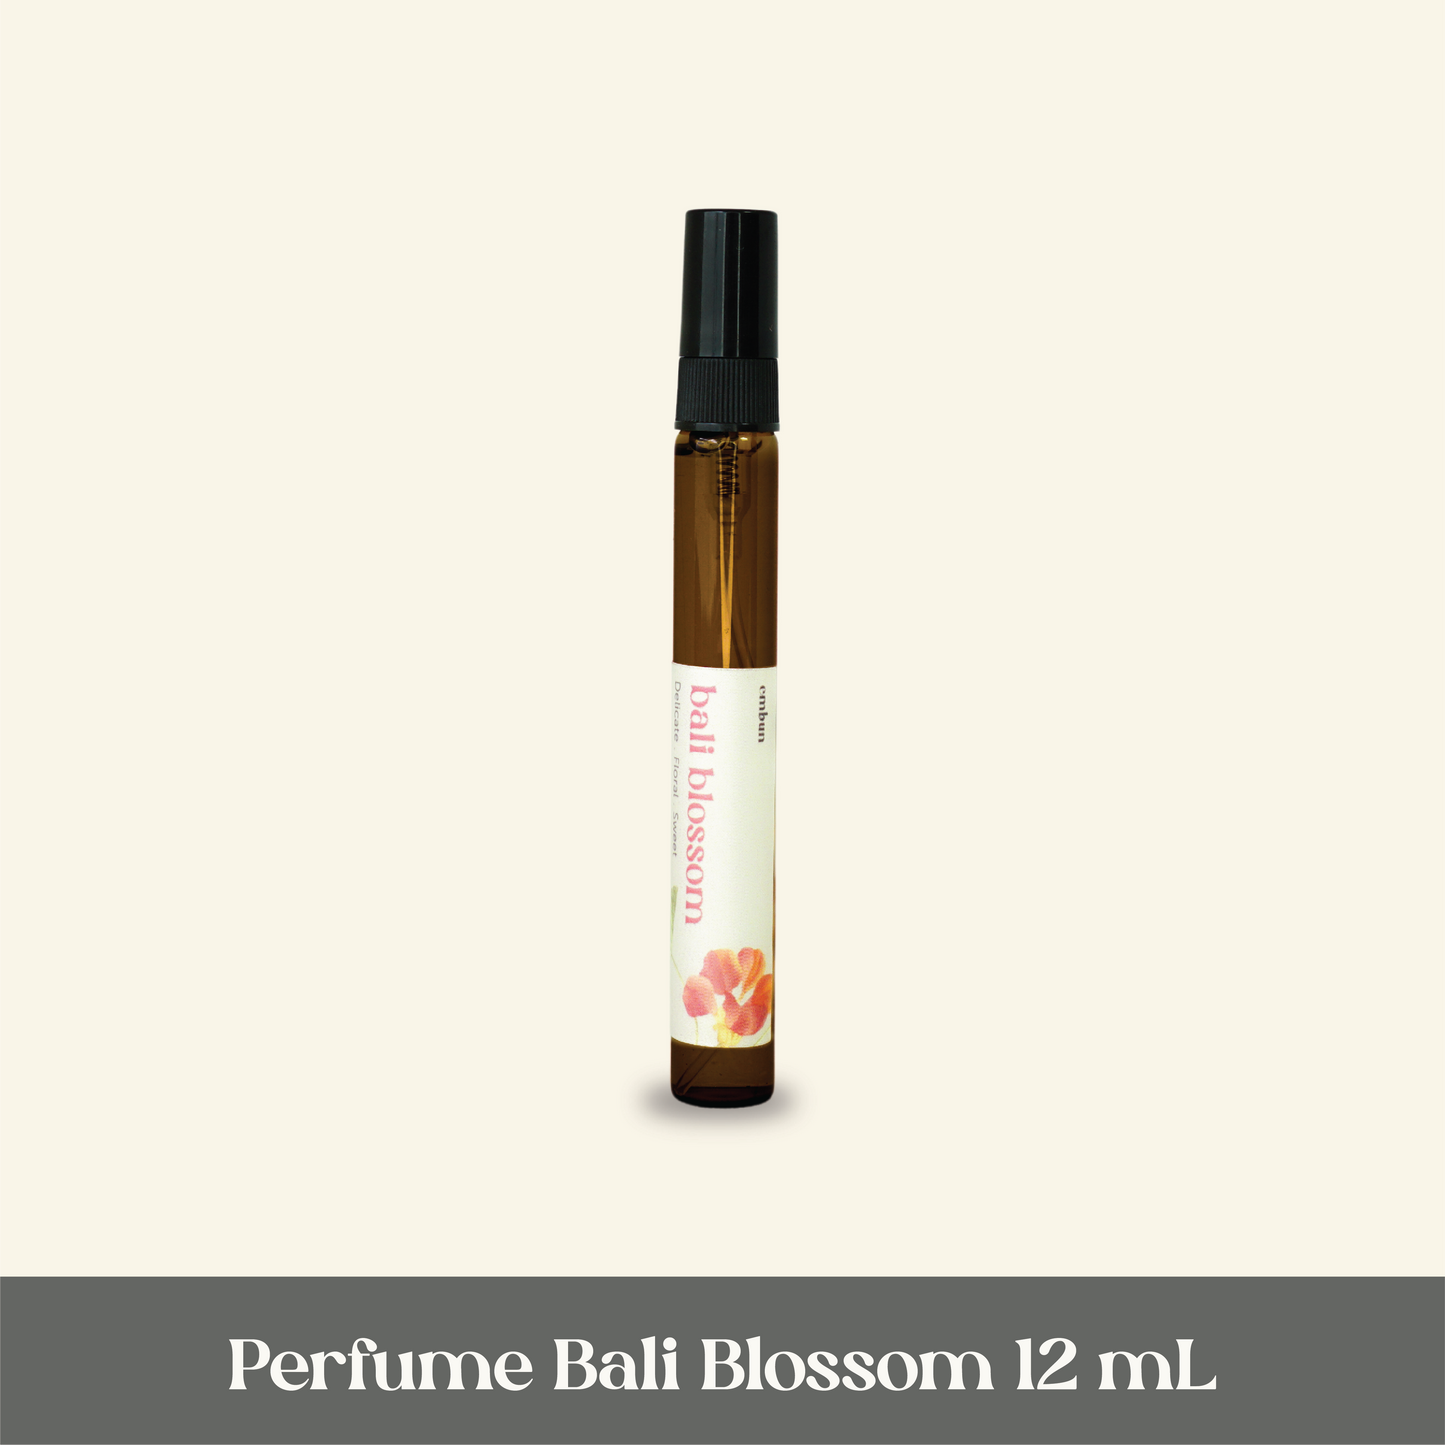 Perfume Bali Blossom 12 ml